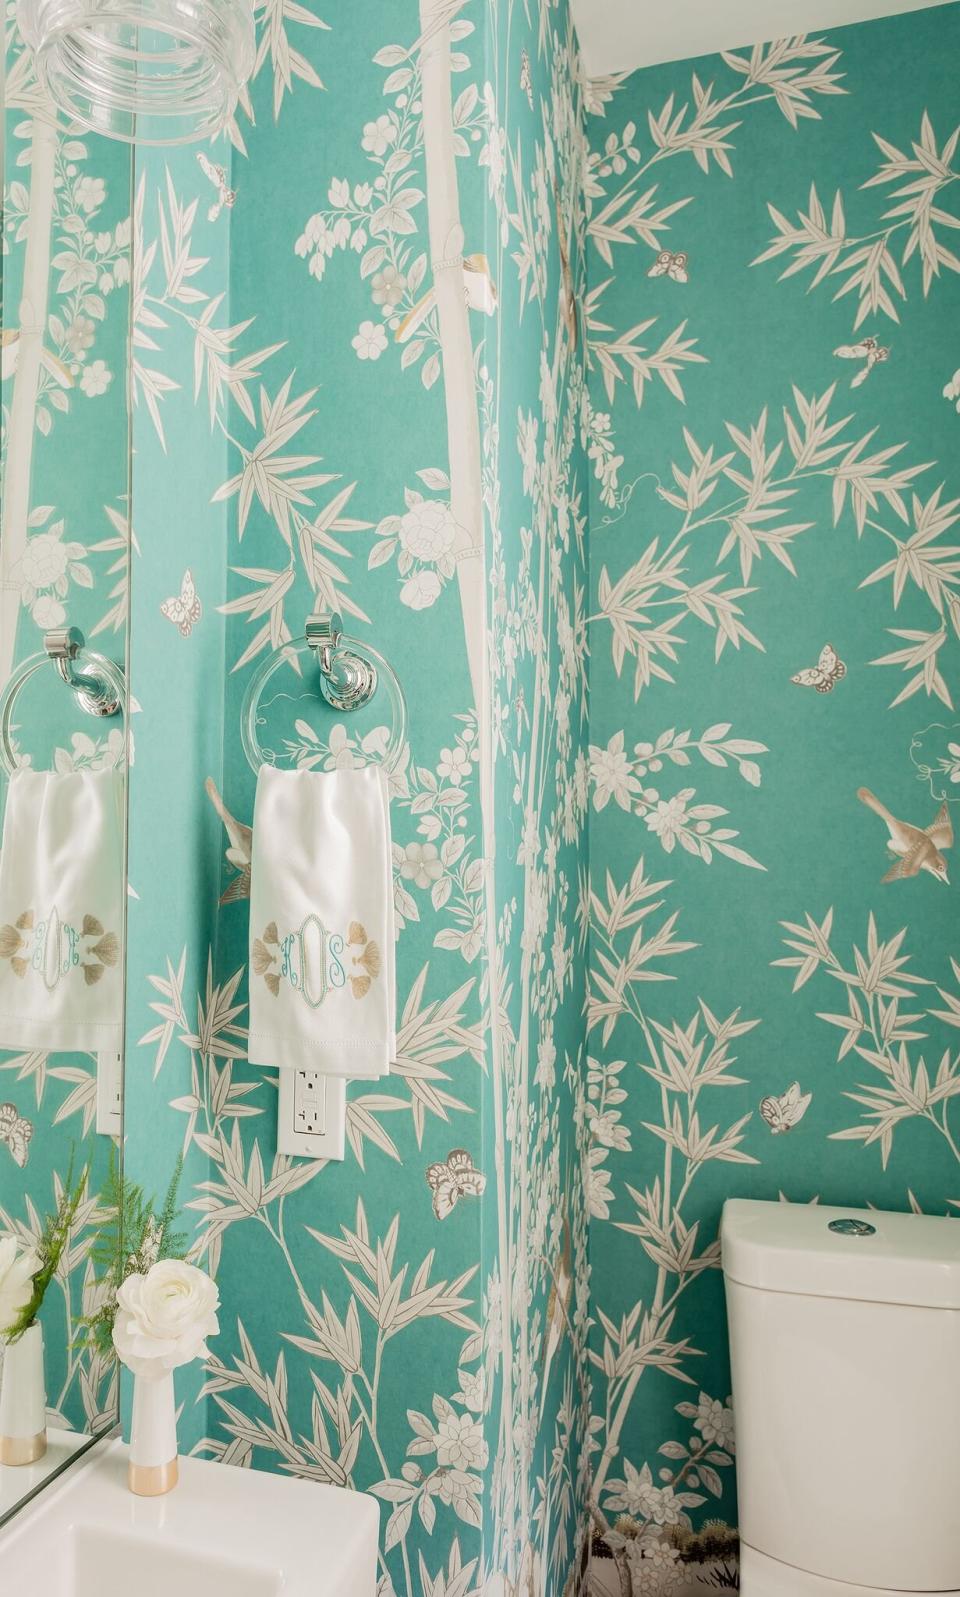 Hang Bold Wallpaper in Your Bathroom